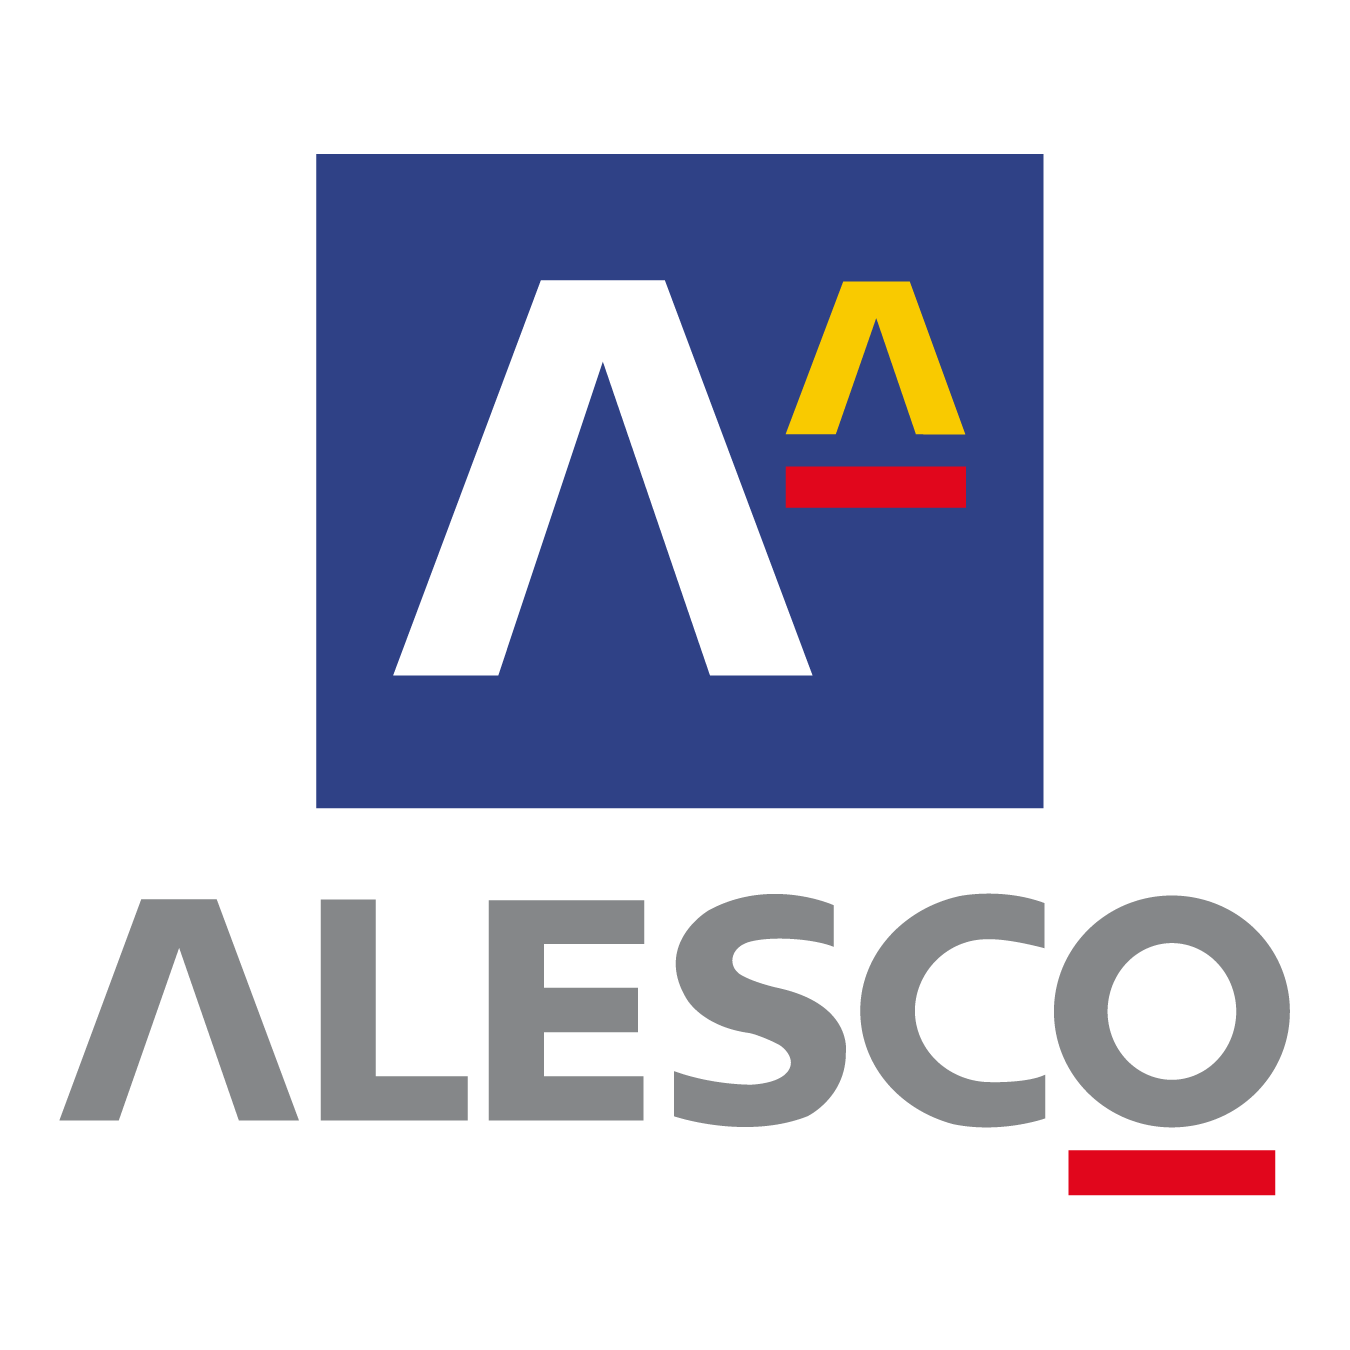 Alesco Logo - PNG Logo Vector Brand Downloads (SVG, EPS)